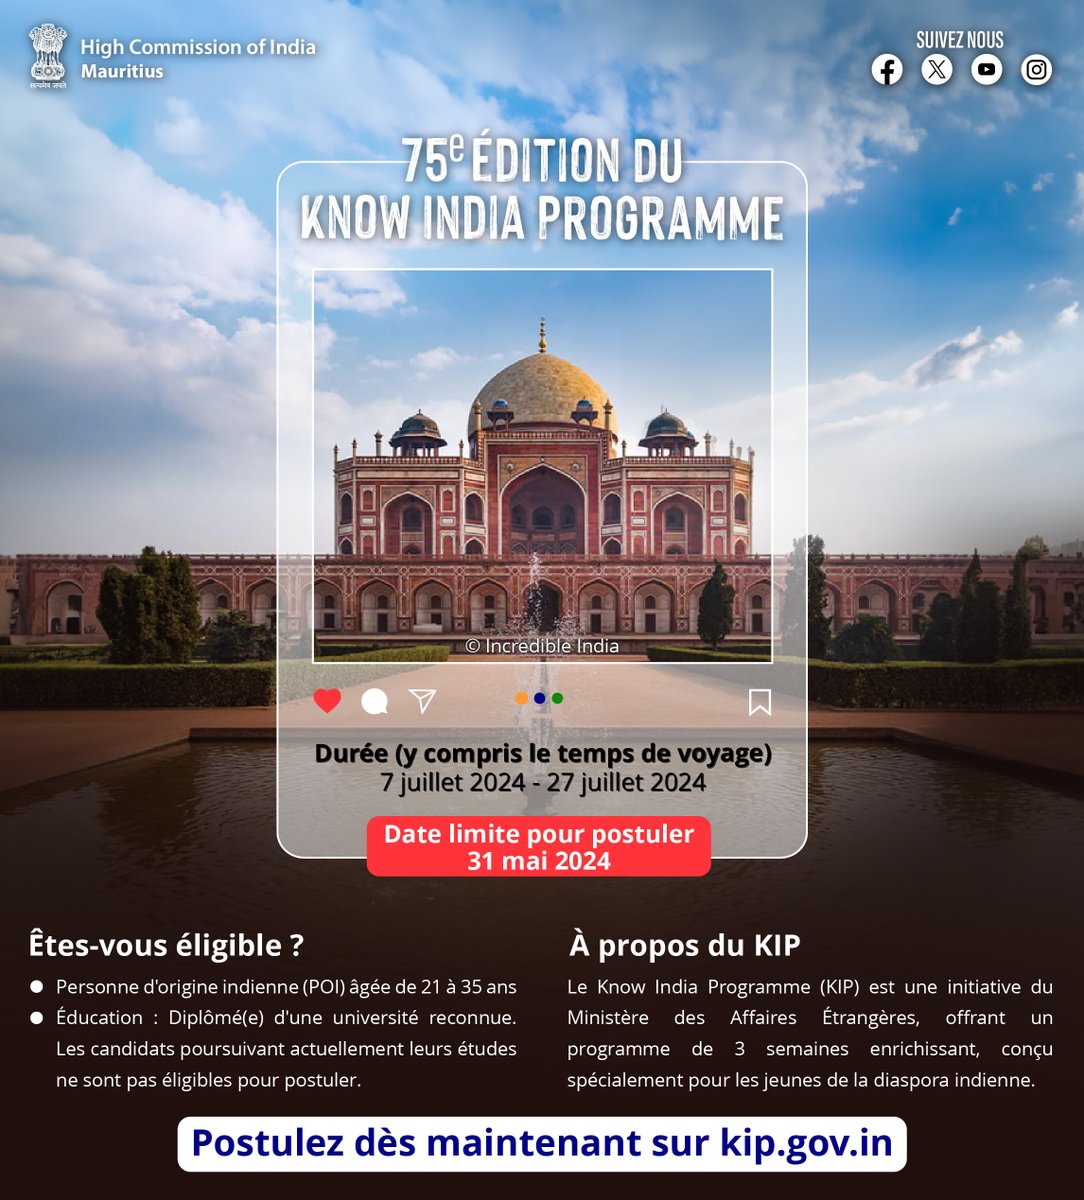 Participez dès maintenant à la 75e édition du #KIP en vous inscrivant sur kip.gov.in. Les jeunes de la diaspora indienne sont invités à saisir cette opportunité exceptionnelle ! 🗓️ Durée : 07 juillet - 27 juillet 2024 🗓️ Date limite pour postuler : 31 mai 2024